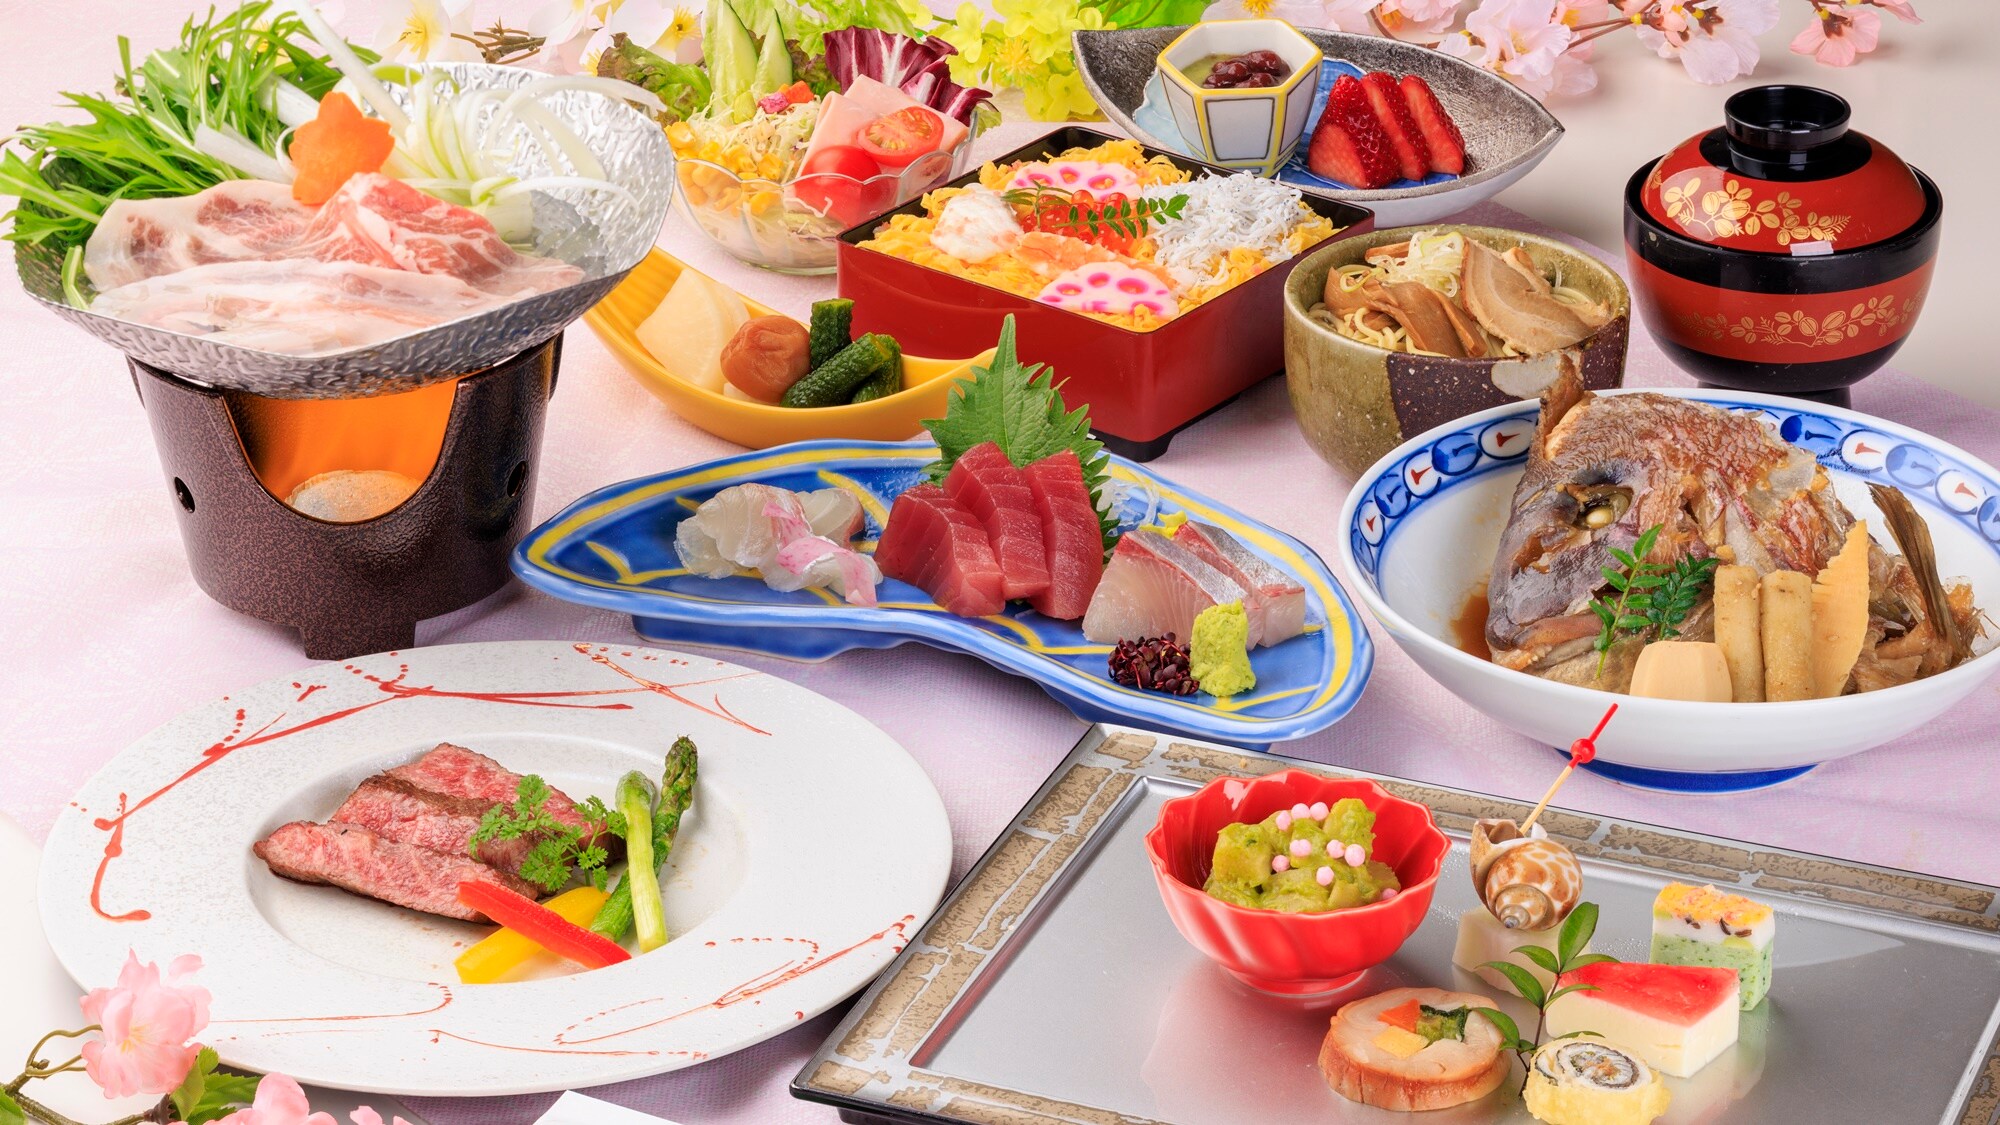 *【스탠다드】국산 소 스테이크나 현지산의 생선 요리로 계절의 맛을 만끽!